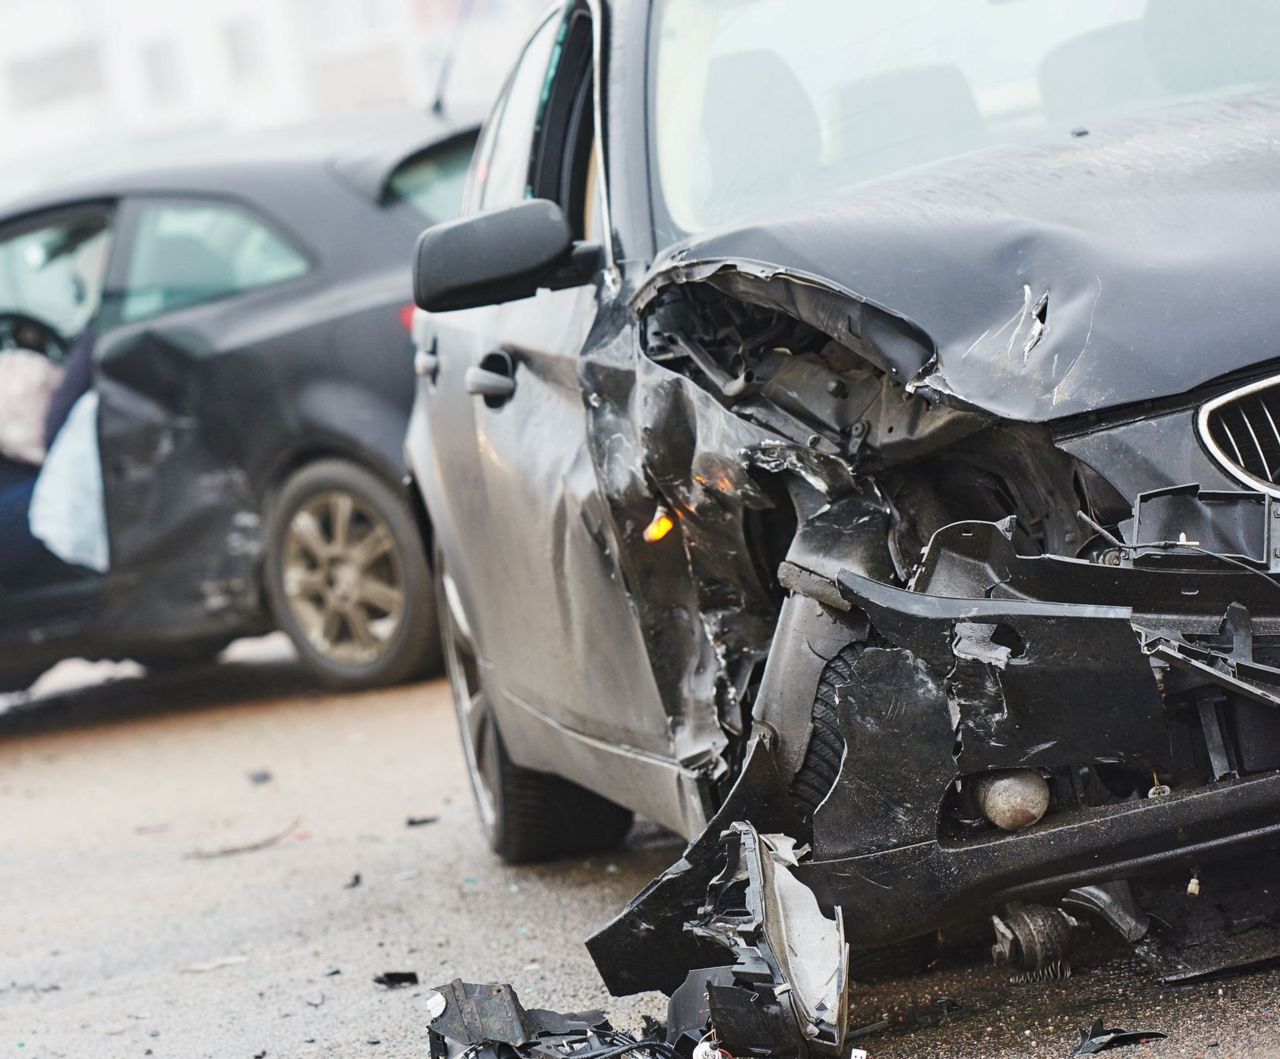 Σε τι βαθμό επικινδυνότητας για τροχαία ατυχήματα κατατάσσονται οι 4 νομοί της Κρήτης